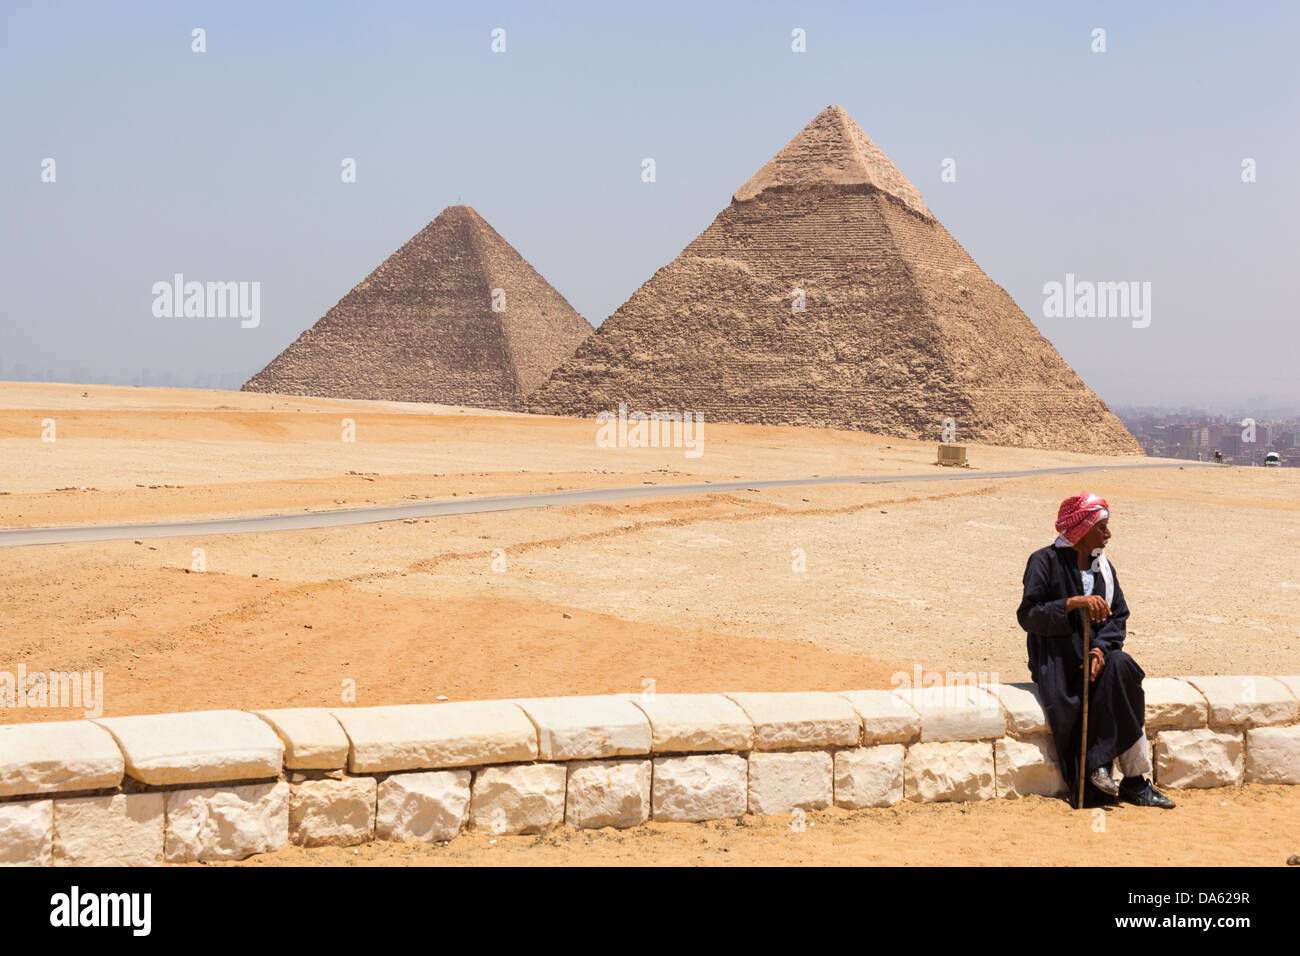 Grande pyramide de Gizeh (pyramide de Chéops et Cheops), et Pyramide de Khafré (pyramide de Khéphren), Giza, Le Caire, Egypte Banque D'Images